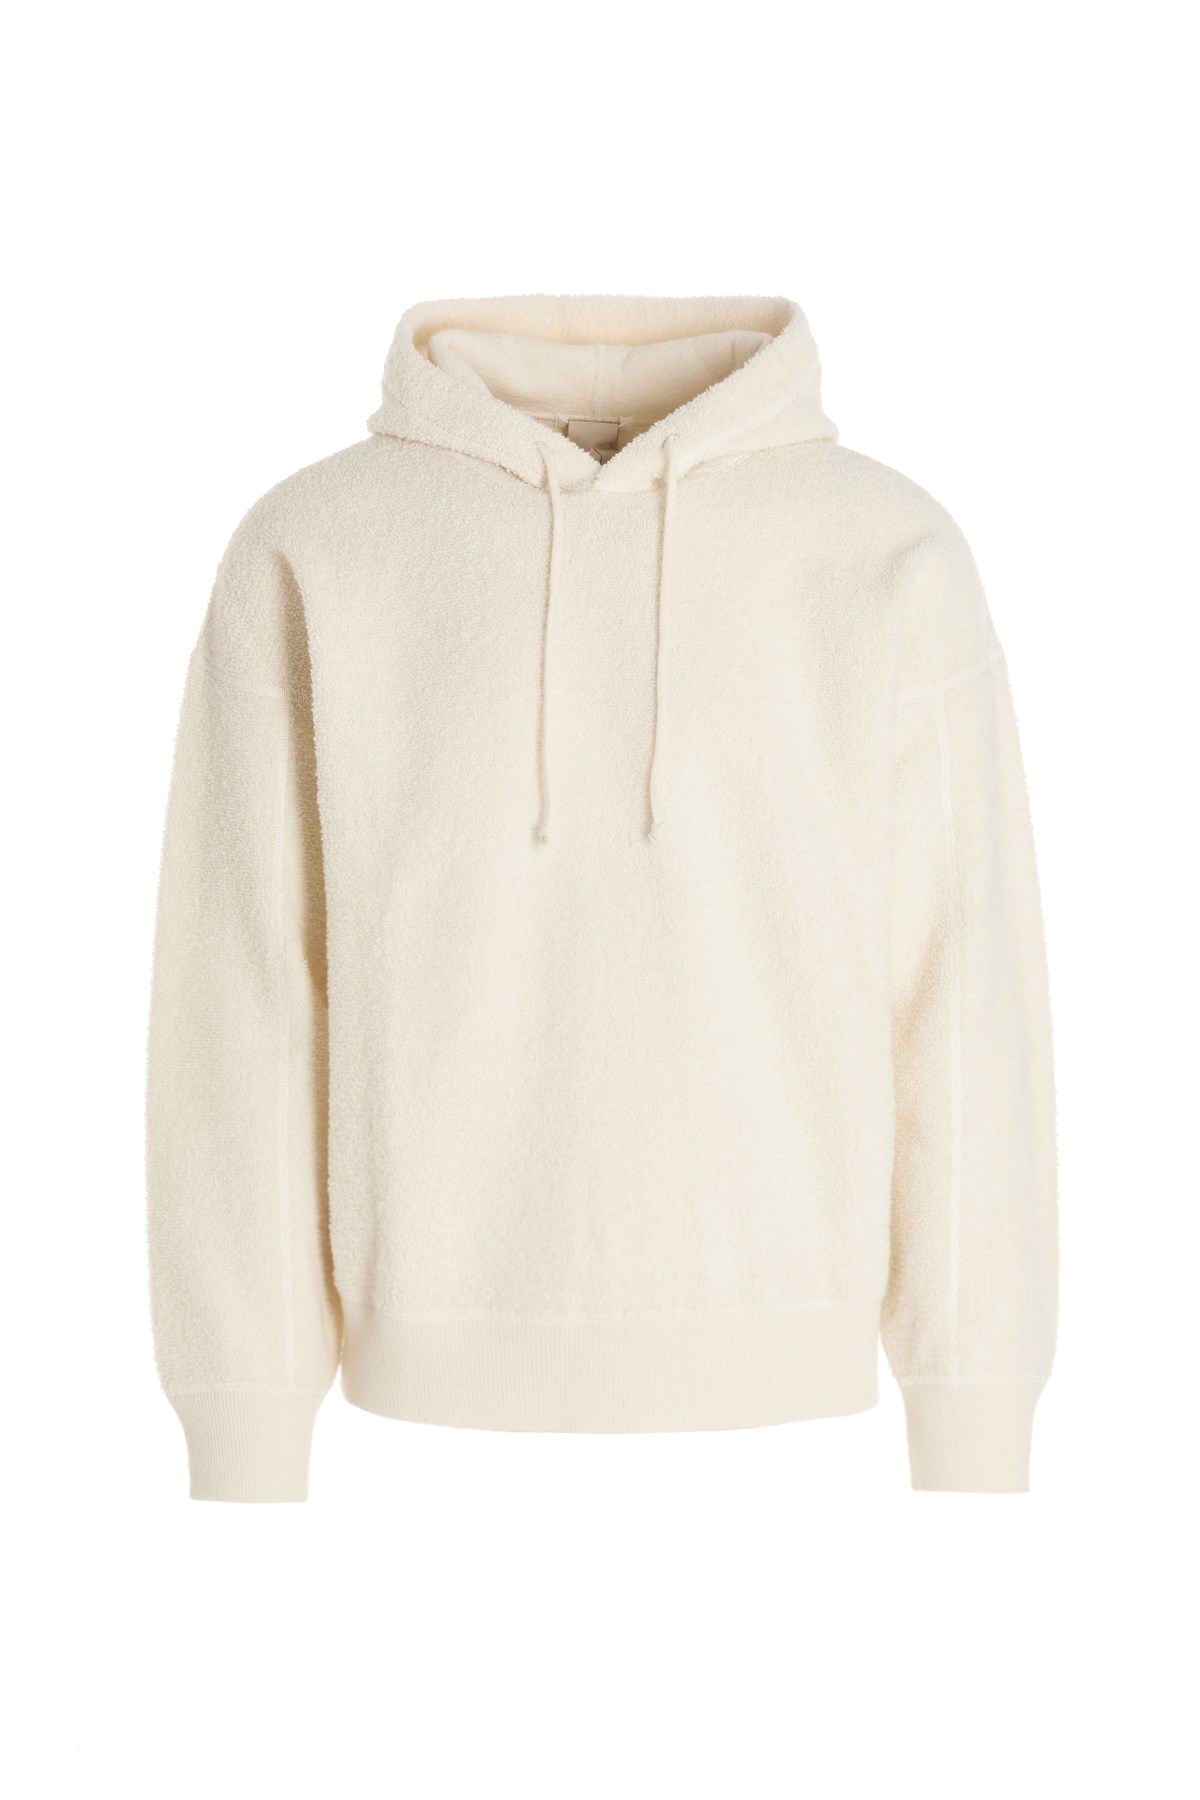 TEN C Hooded Sweater